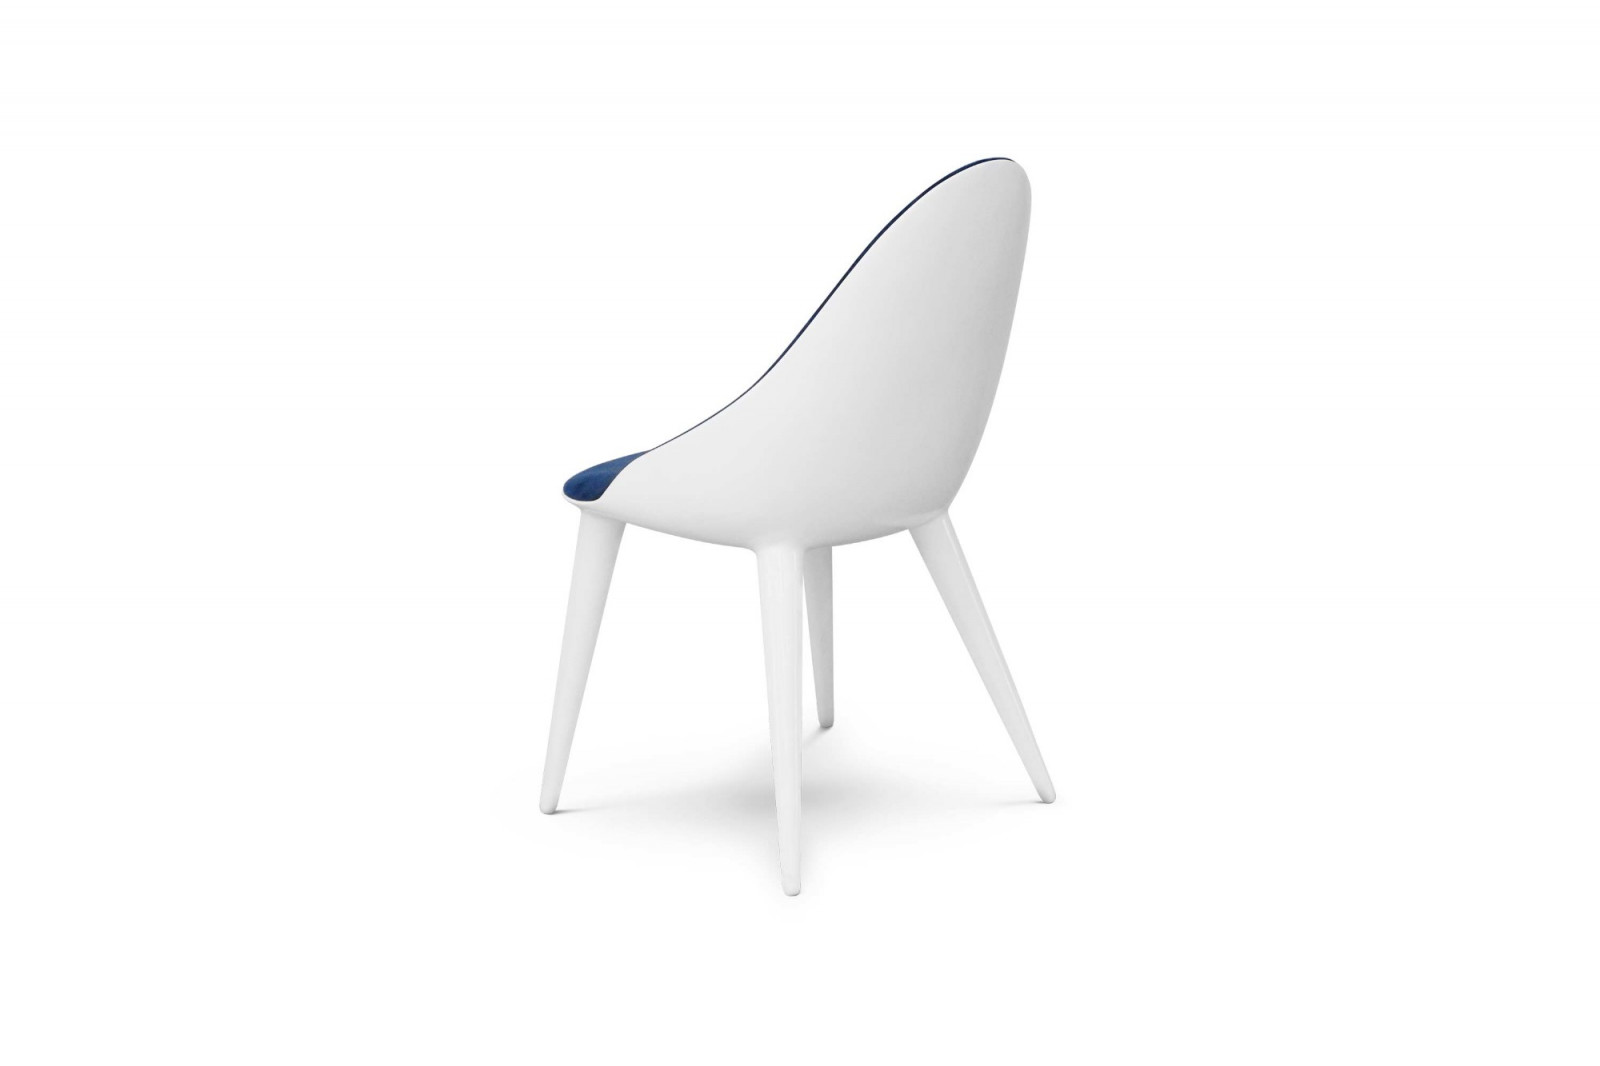 chair-interior-indoor-elegant-modern-white-velvet-blue-monaco-gansk-3-1723-1600-1400-100